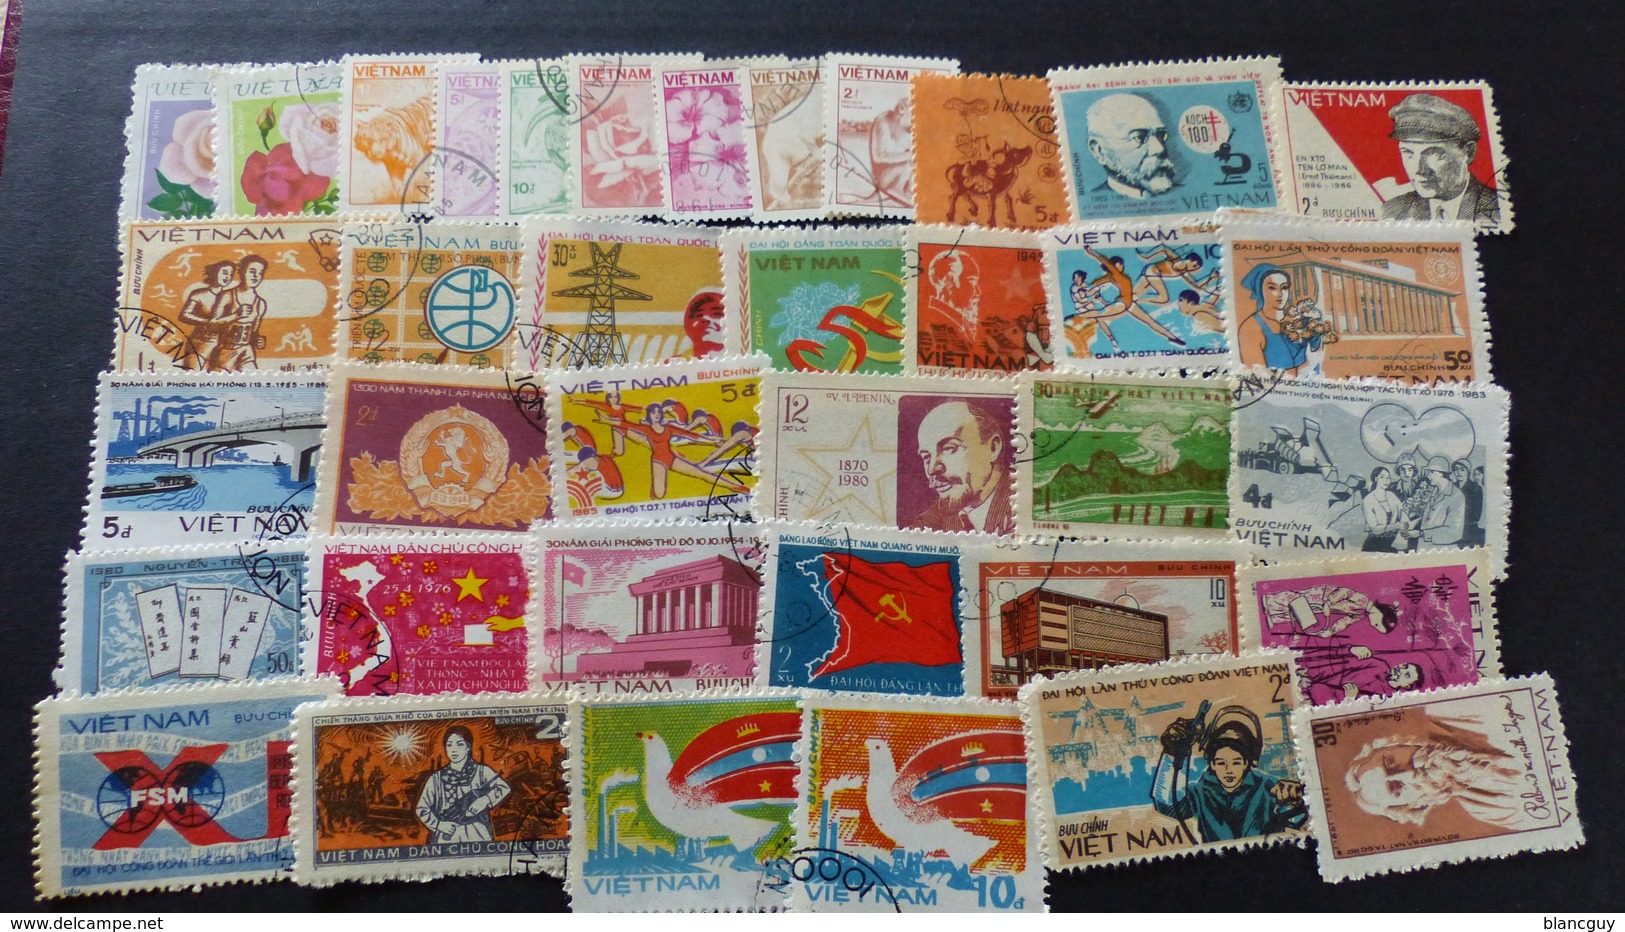 AFRIQUE - AMÉRIQUE - ASIE - OCÉANIE - 2400 timbres tous différents neufs et oblitérés